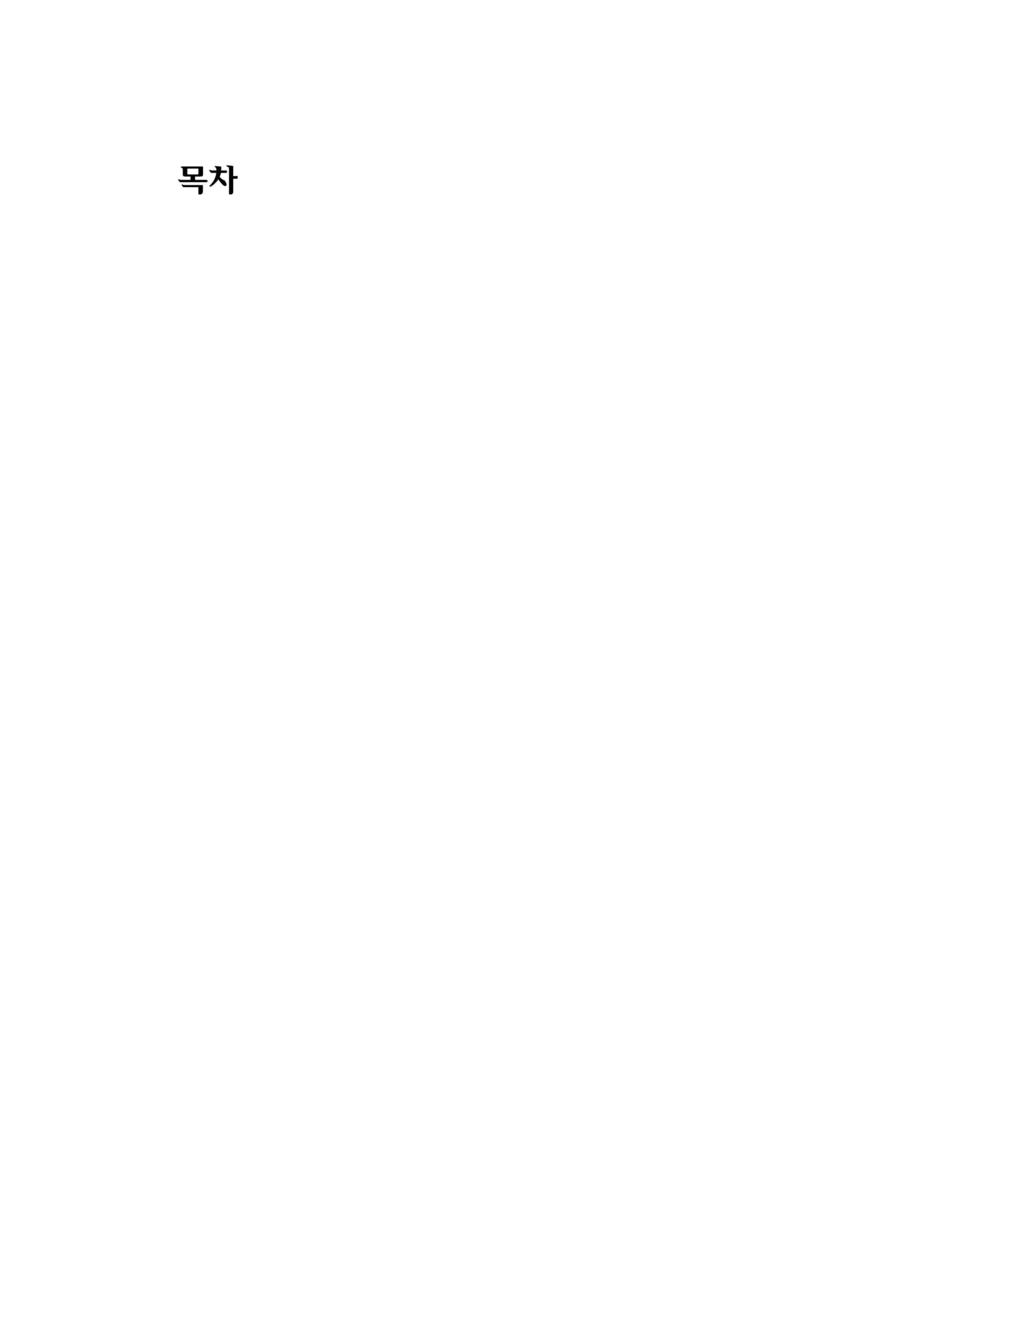 목차 발표 1 2017 년남북관계전망과대책 9 김영수 ( 서강대교수 ) 발표 2 2017